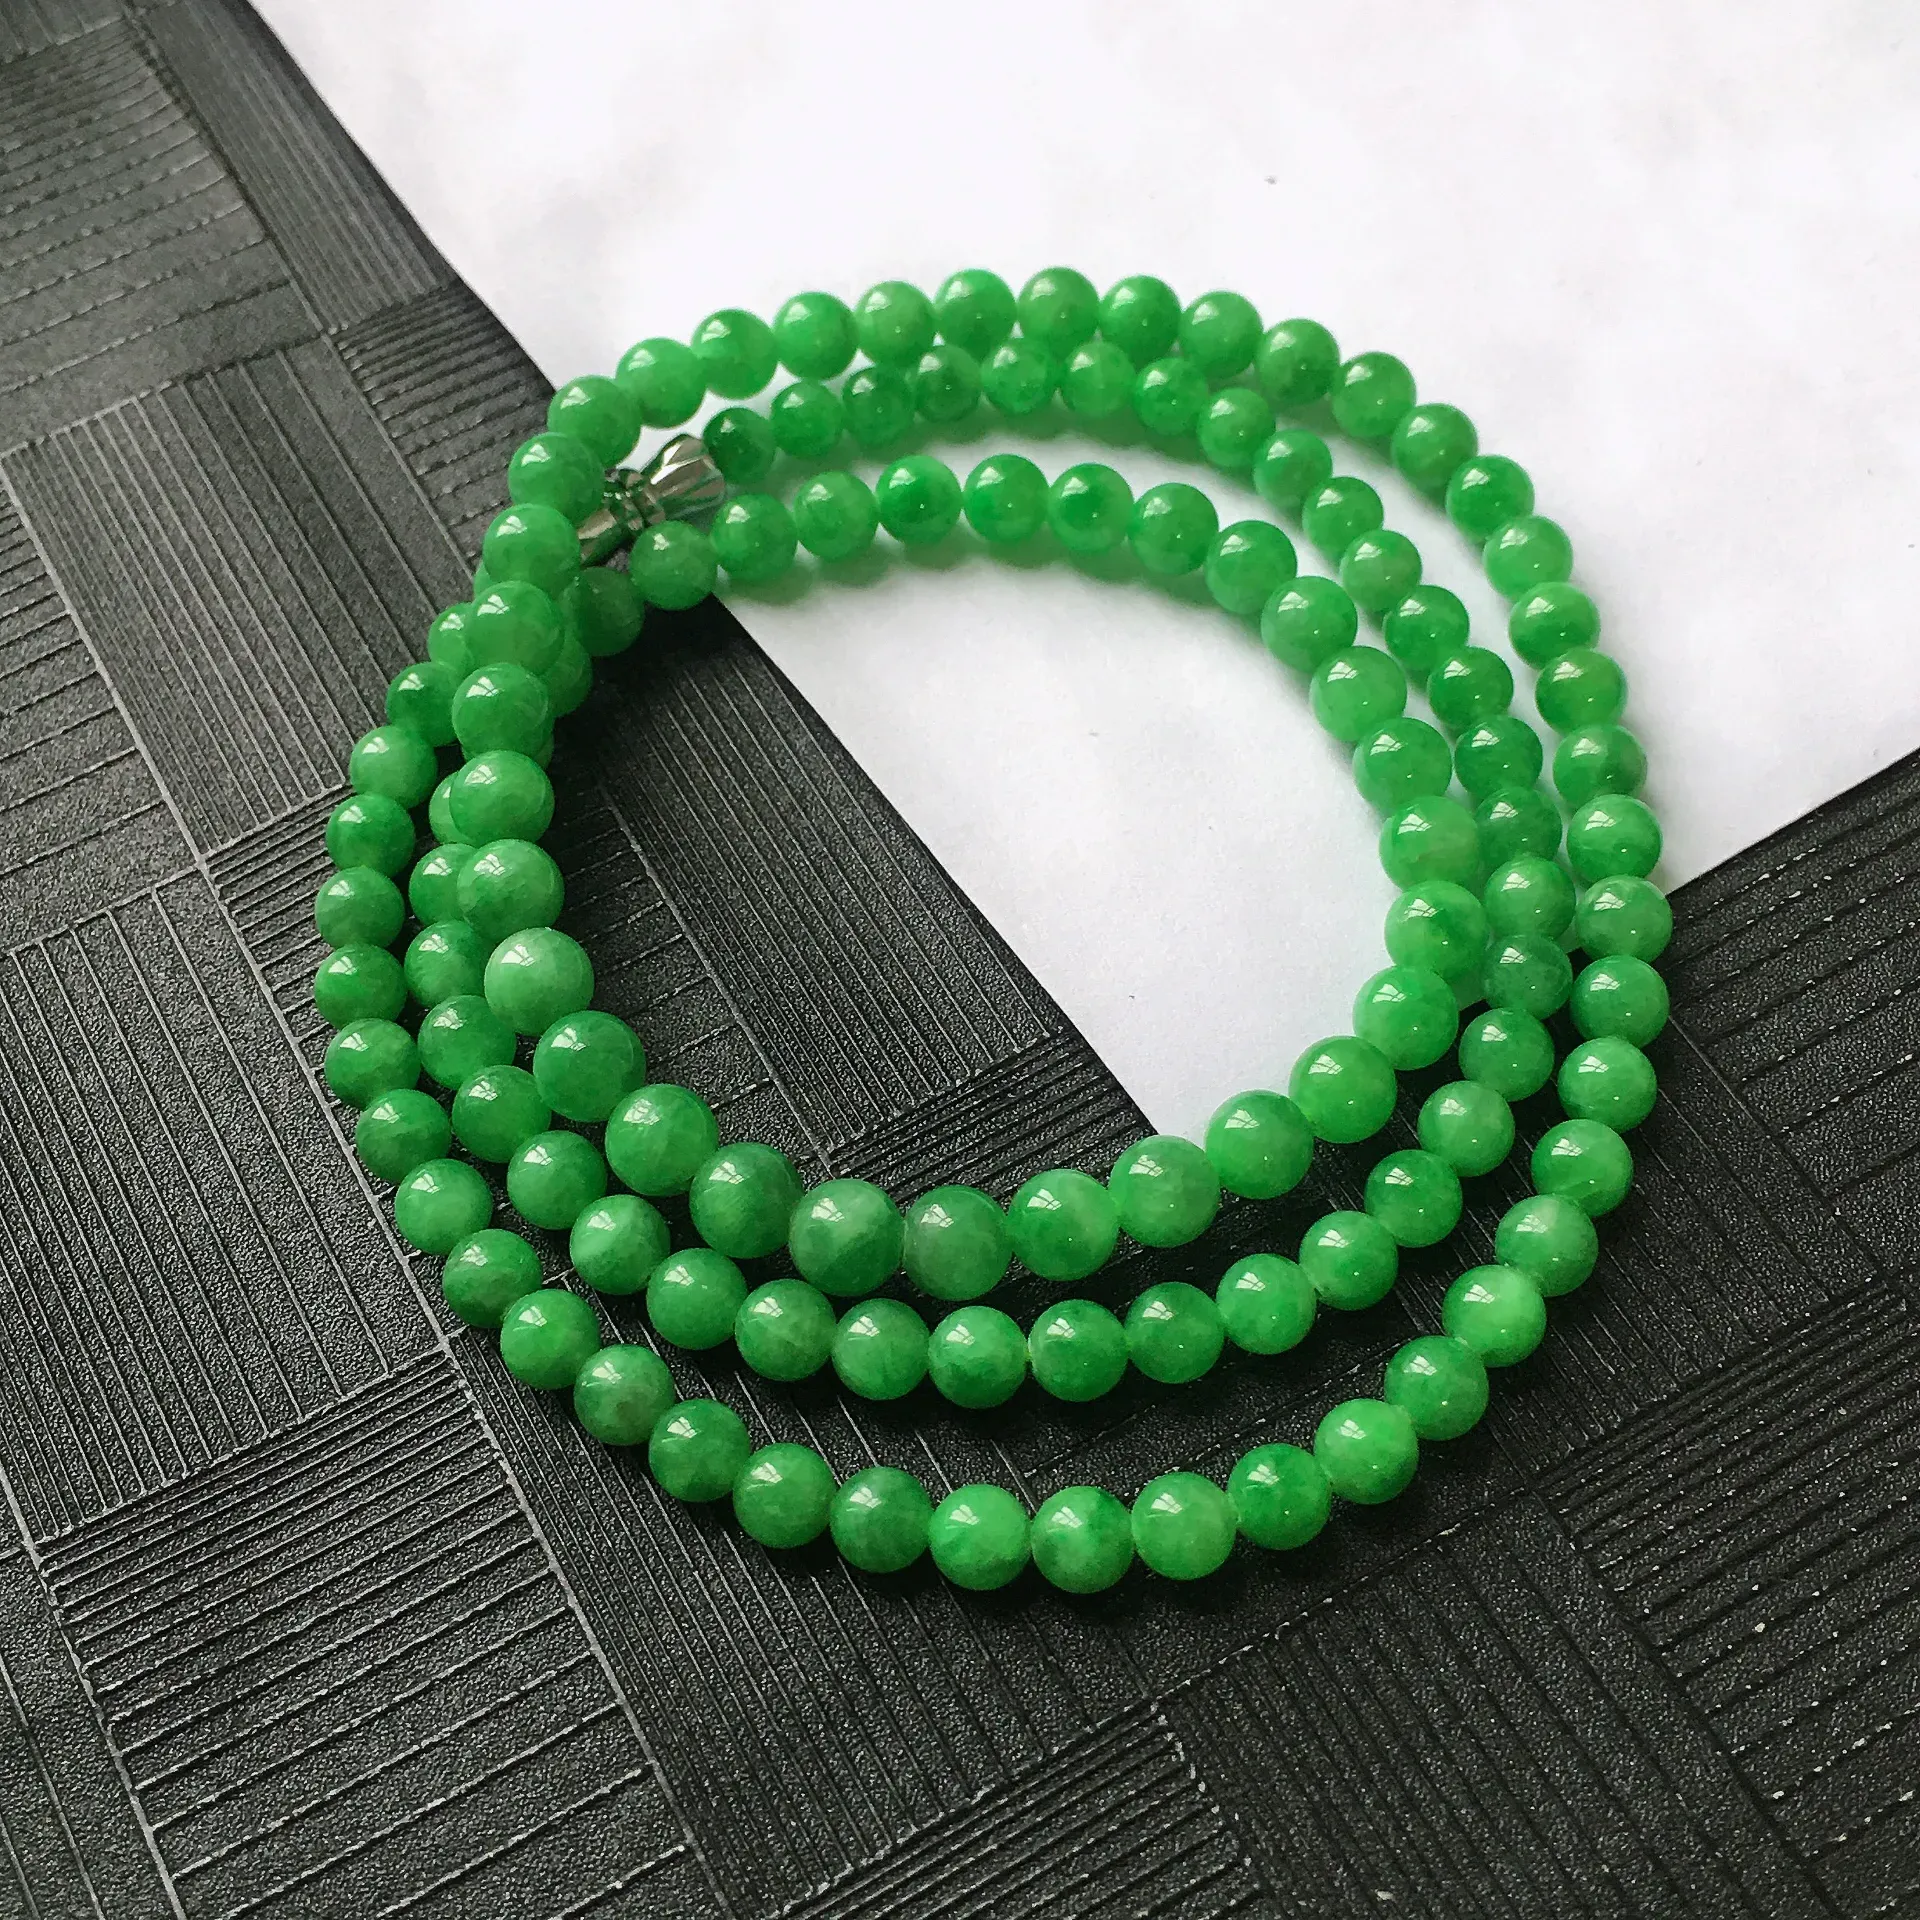 天然A货翡翠满阳绿圆珠项链，种水好玉质细腻温润，颜色漂亮。尺寸：取大 5.5mm 取小 4.3mm 项链周长：55cm